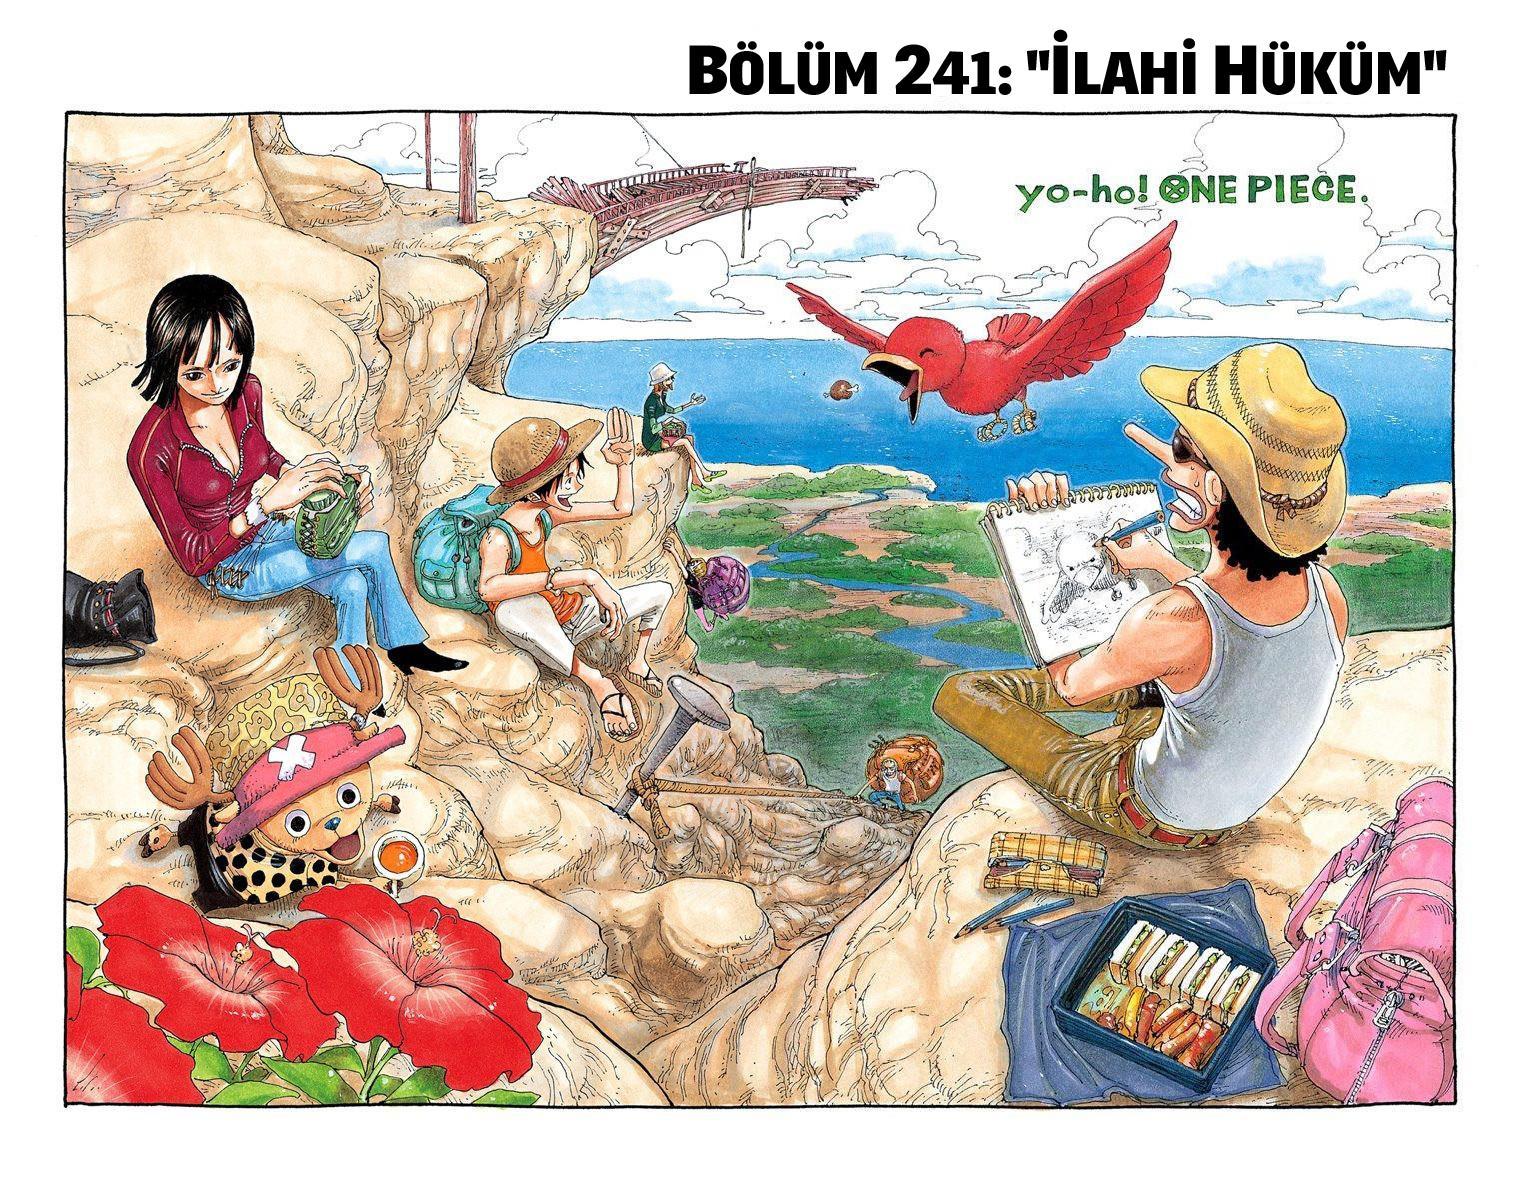 One Piece [Renkli] mangasının 0241 bölümünün 2. sayfasını okuyorsunuz.